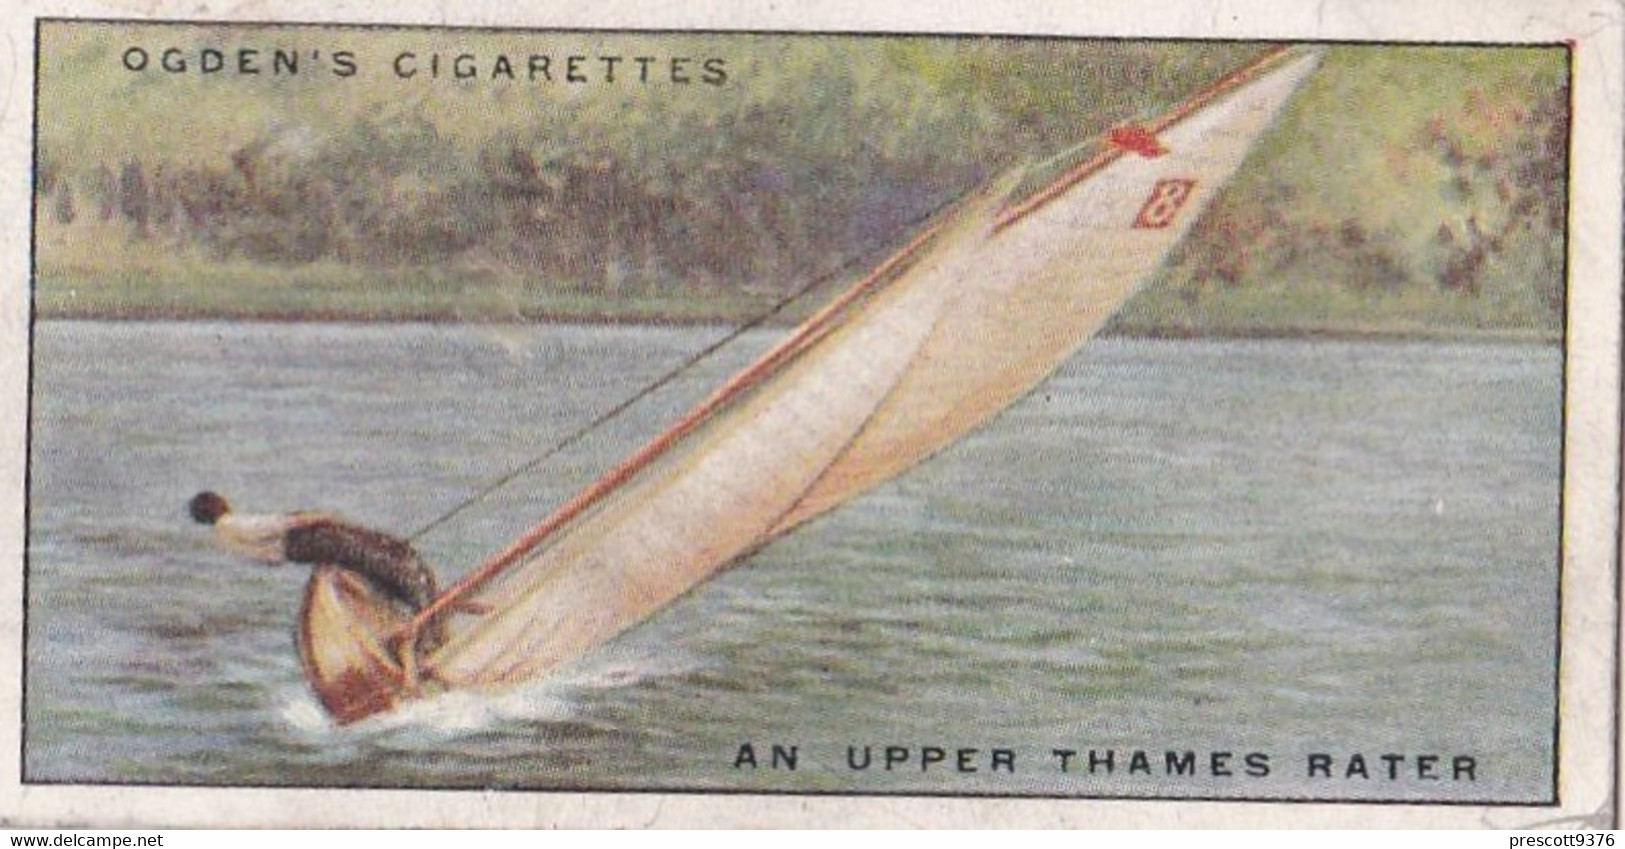 Yachts & Motor Boats 1931 - 43 Upper Thames Rates  - Ogdens  Cigarette Card - Original  - Ships - Sealife - Ogden's